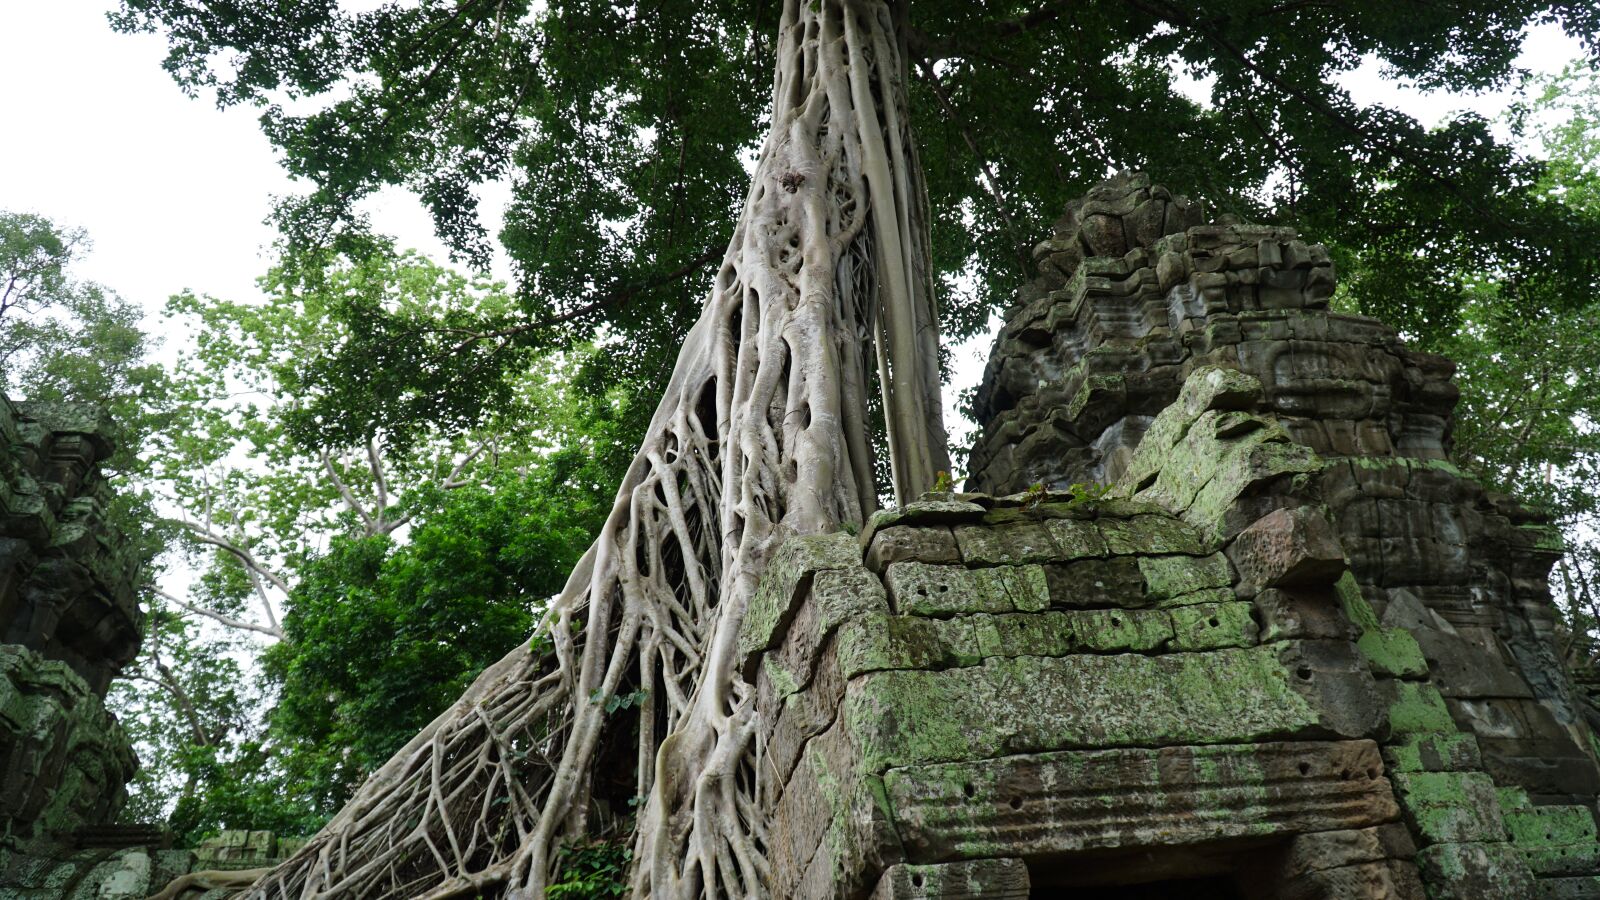 Sony a6300 sample photo. Angkor wat, angkor thom photography